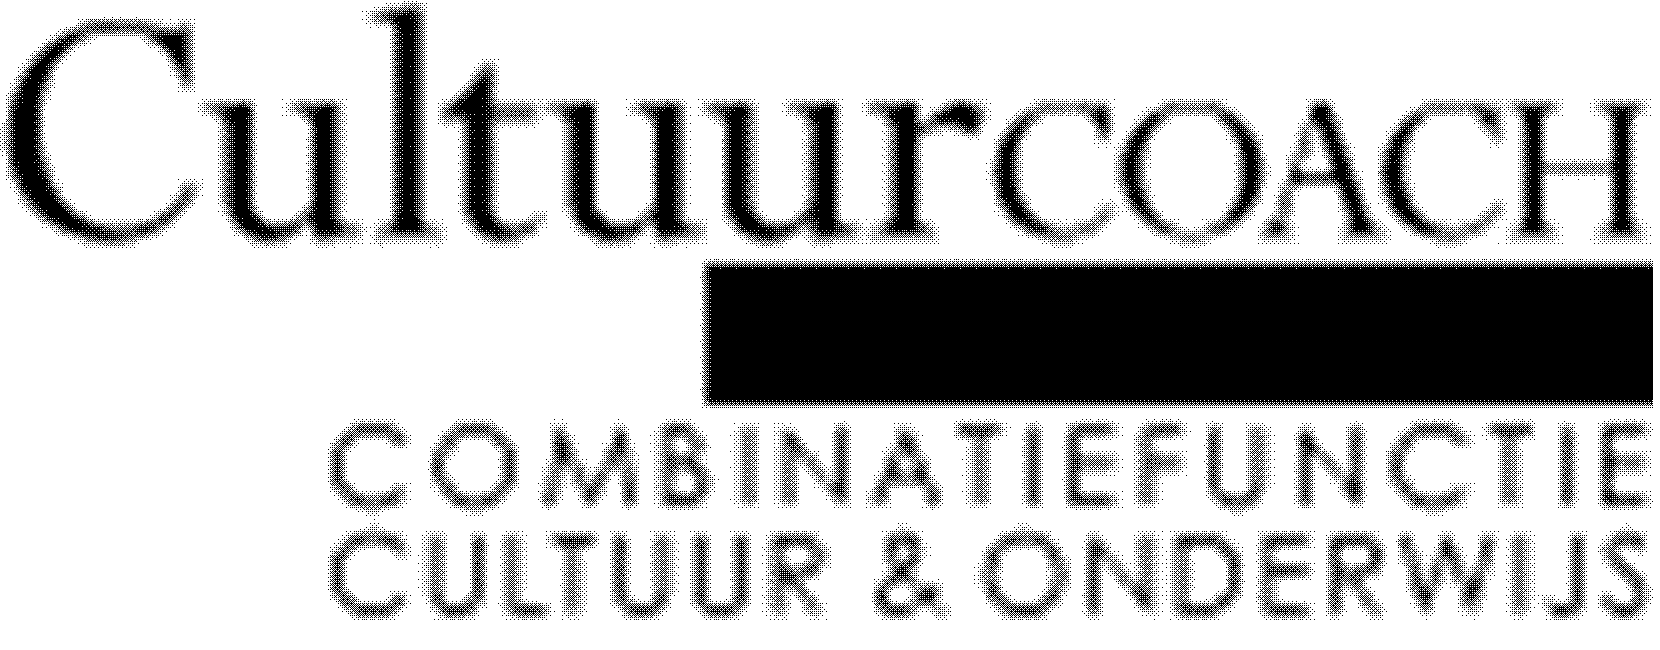 De Cultuurformatie De Cultuurformatie stimuleert de culturele sector om combinatiefuncties mogelijk te